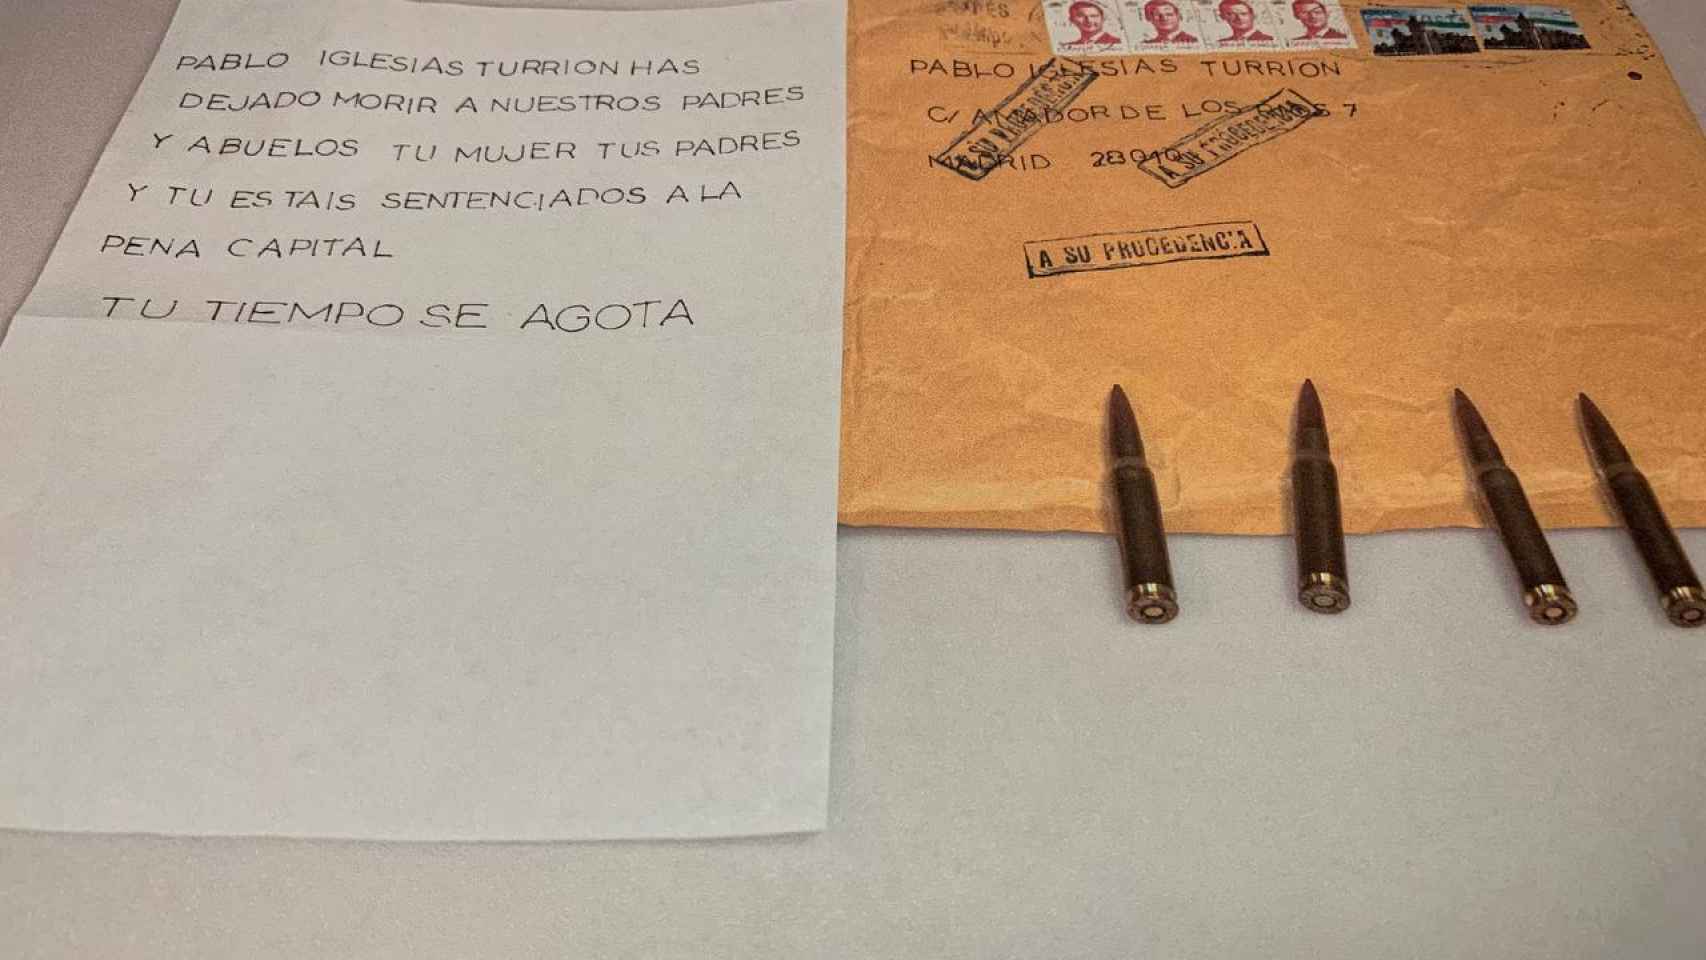 La primera carta amenazante con las balas enviadas a Pablo Iglesias.